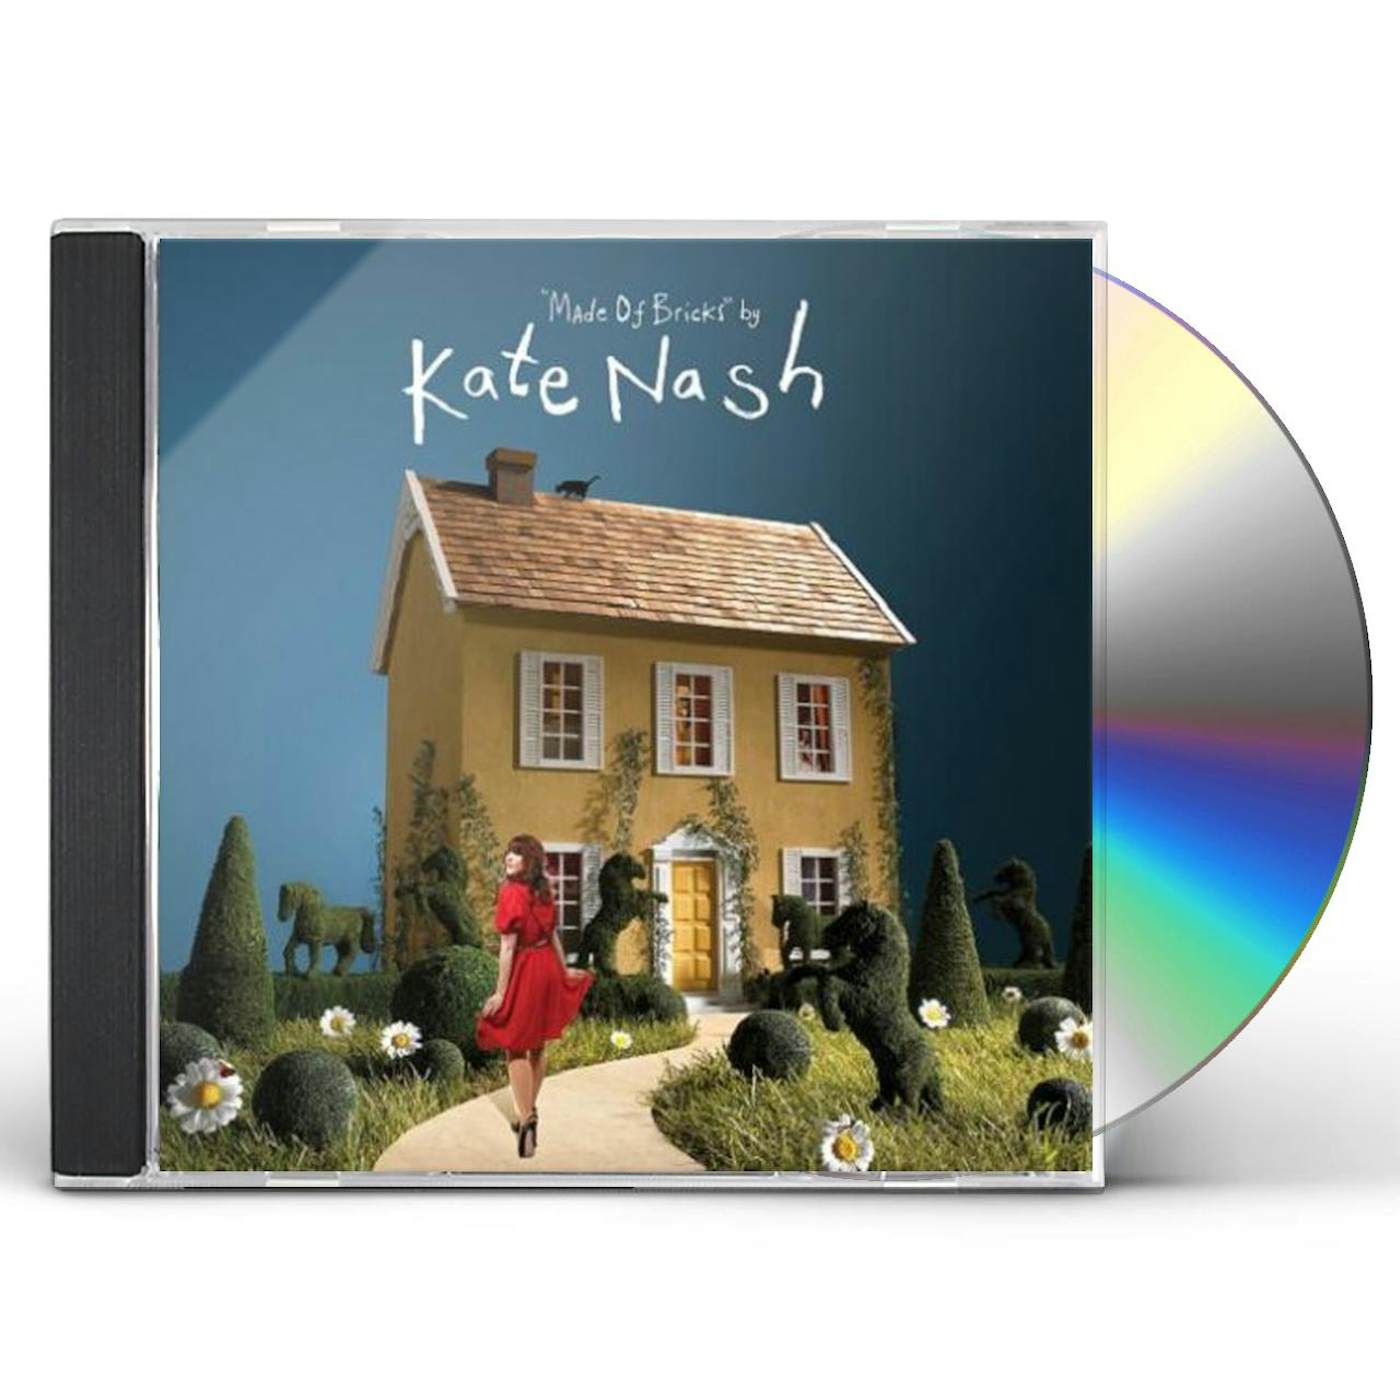 Kate Nash MADE OF BRICKS CD